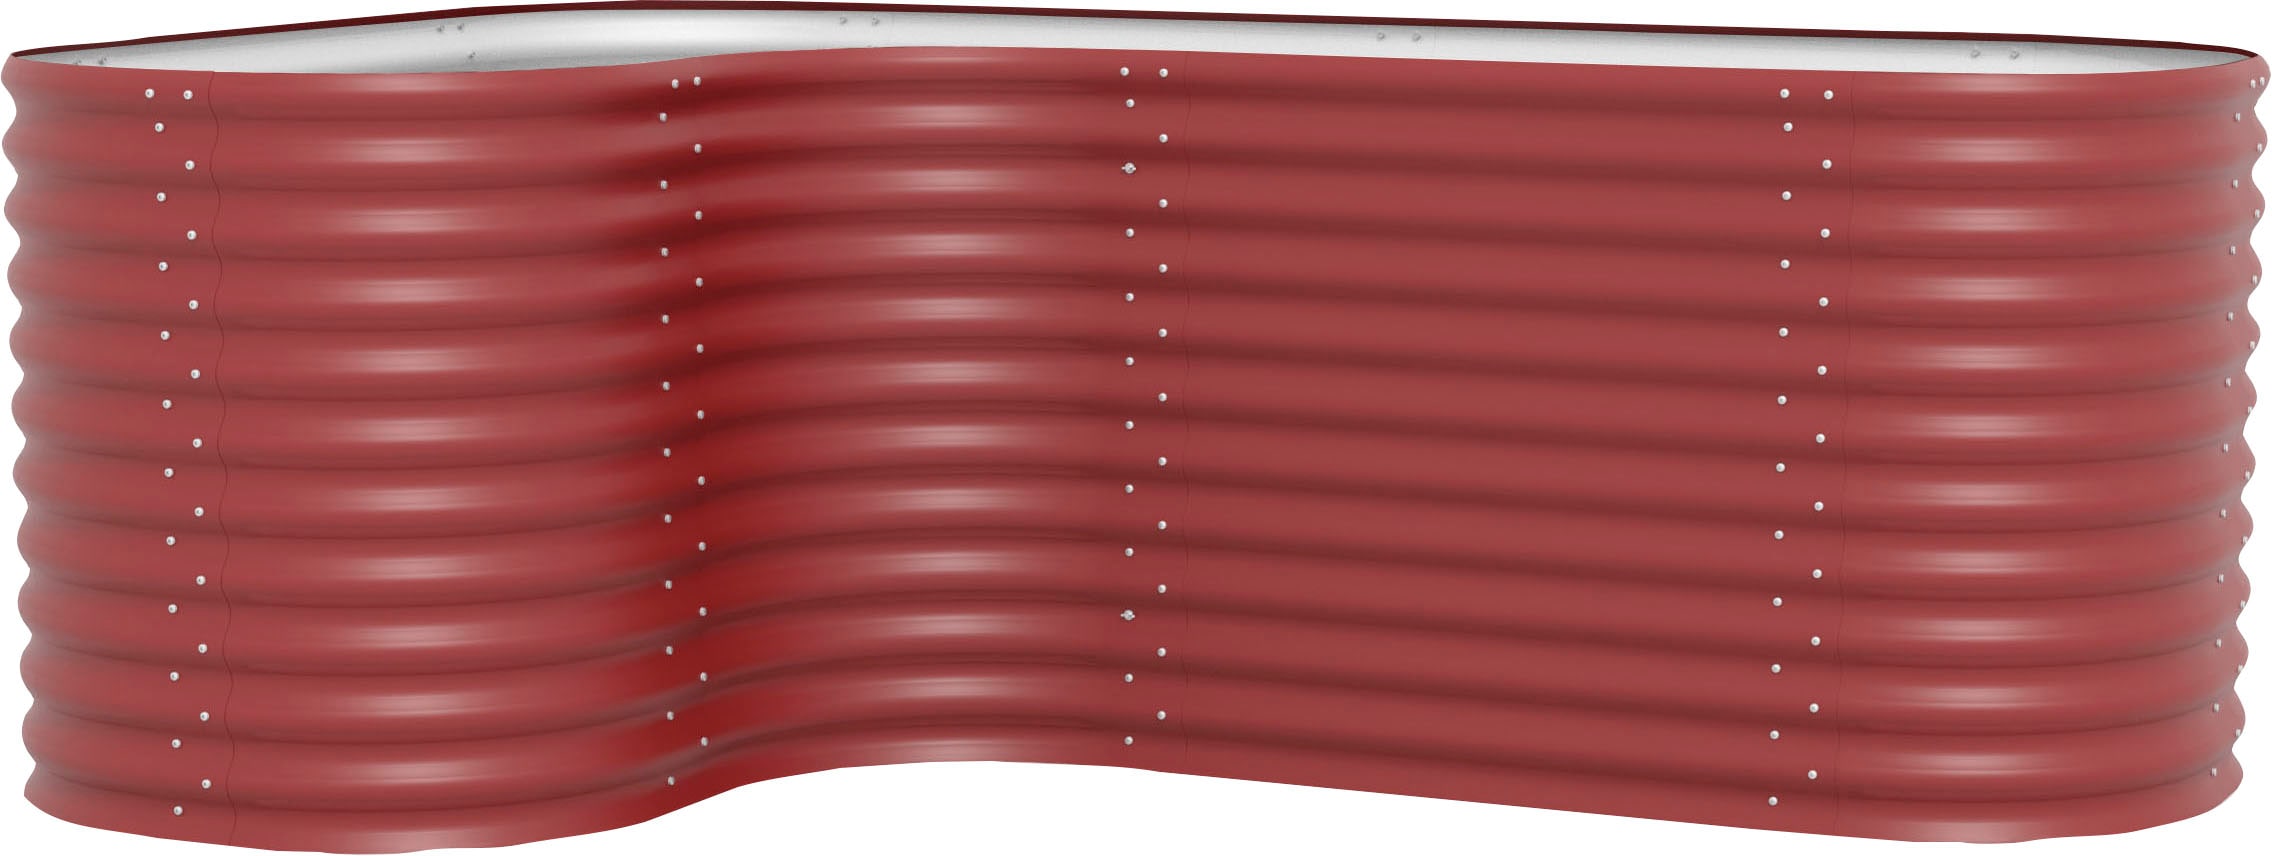 Vitavia erweiterung -curve- für hochbeet -vita 858-, rubin rot, 0,86 m